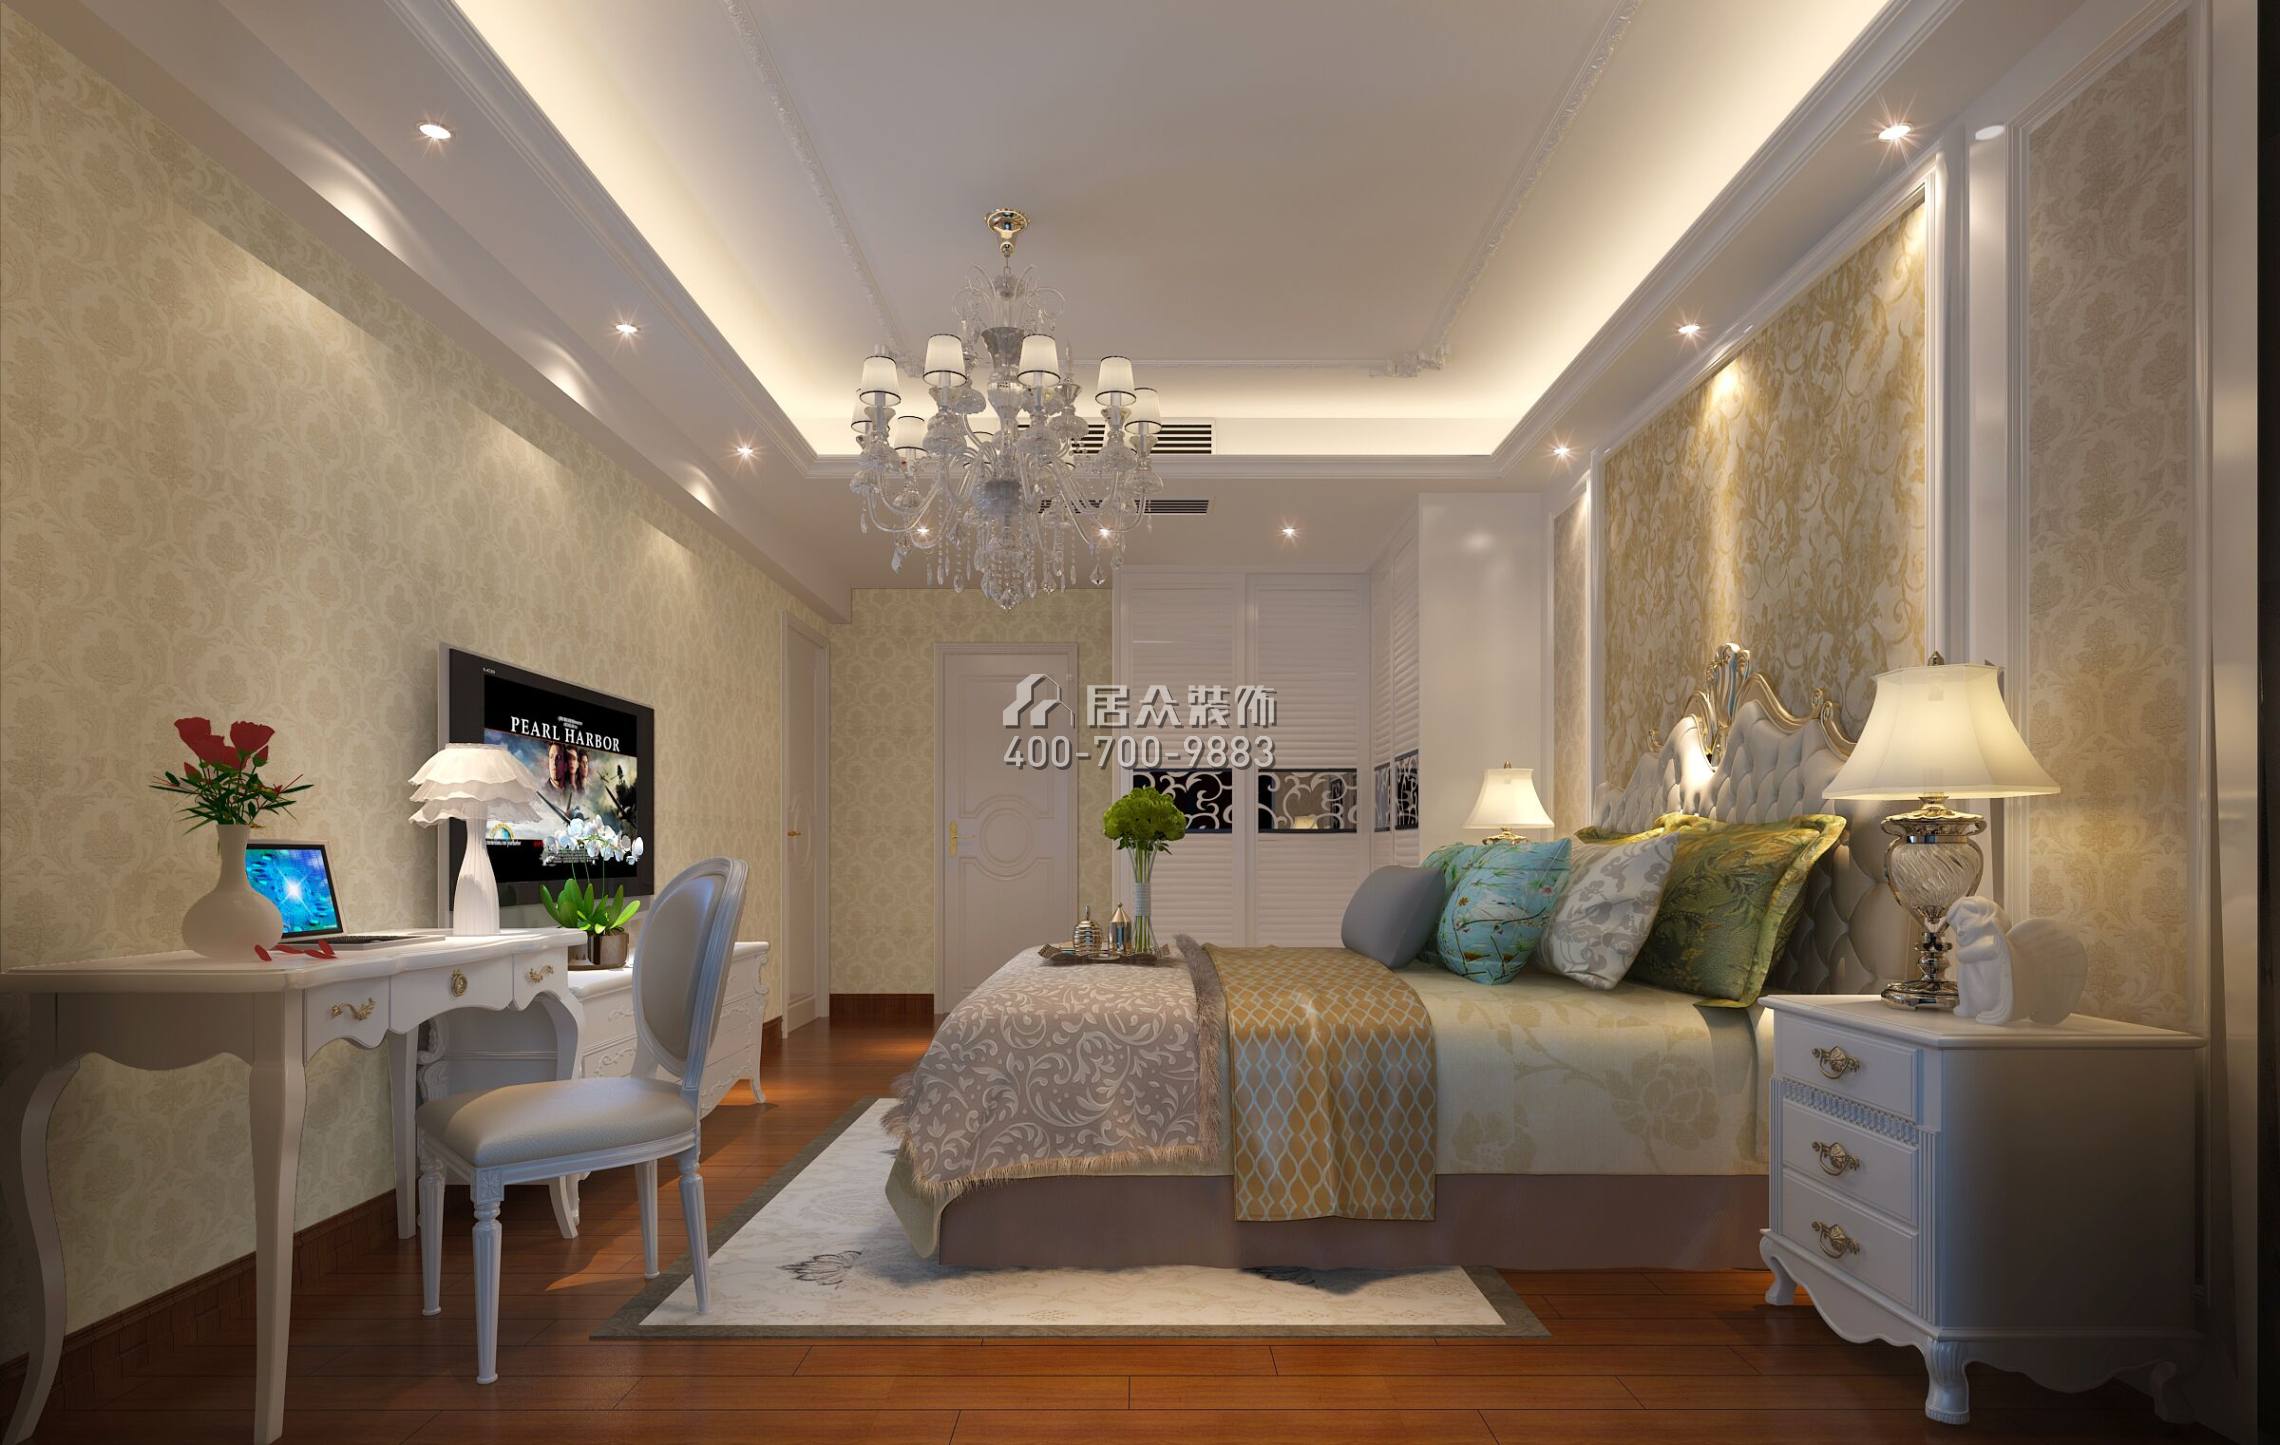 珊瑚天峰170平方米欧式风格平层户型卧室装修效果图